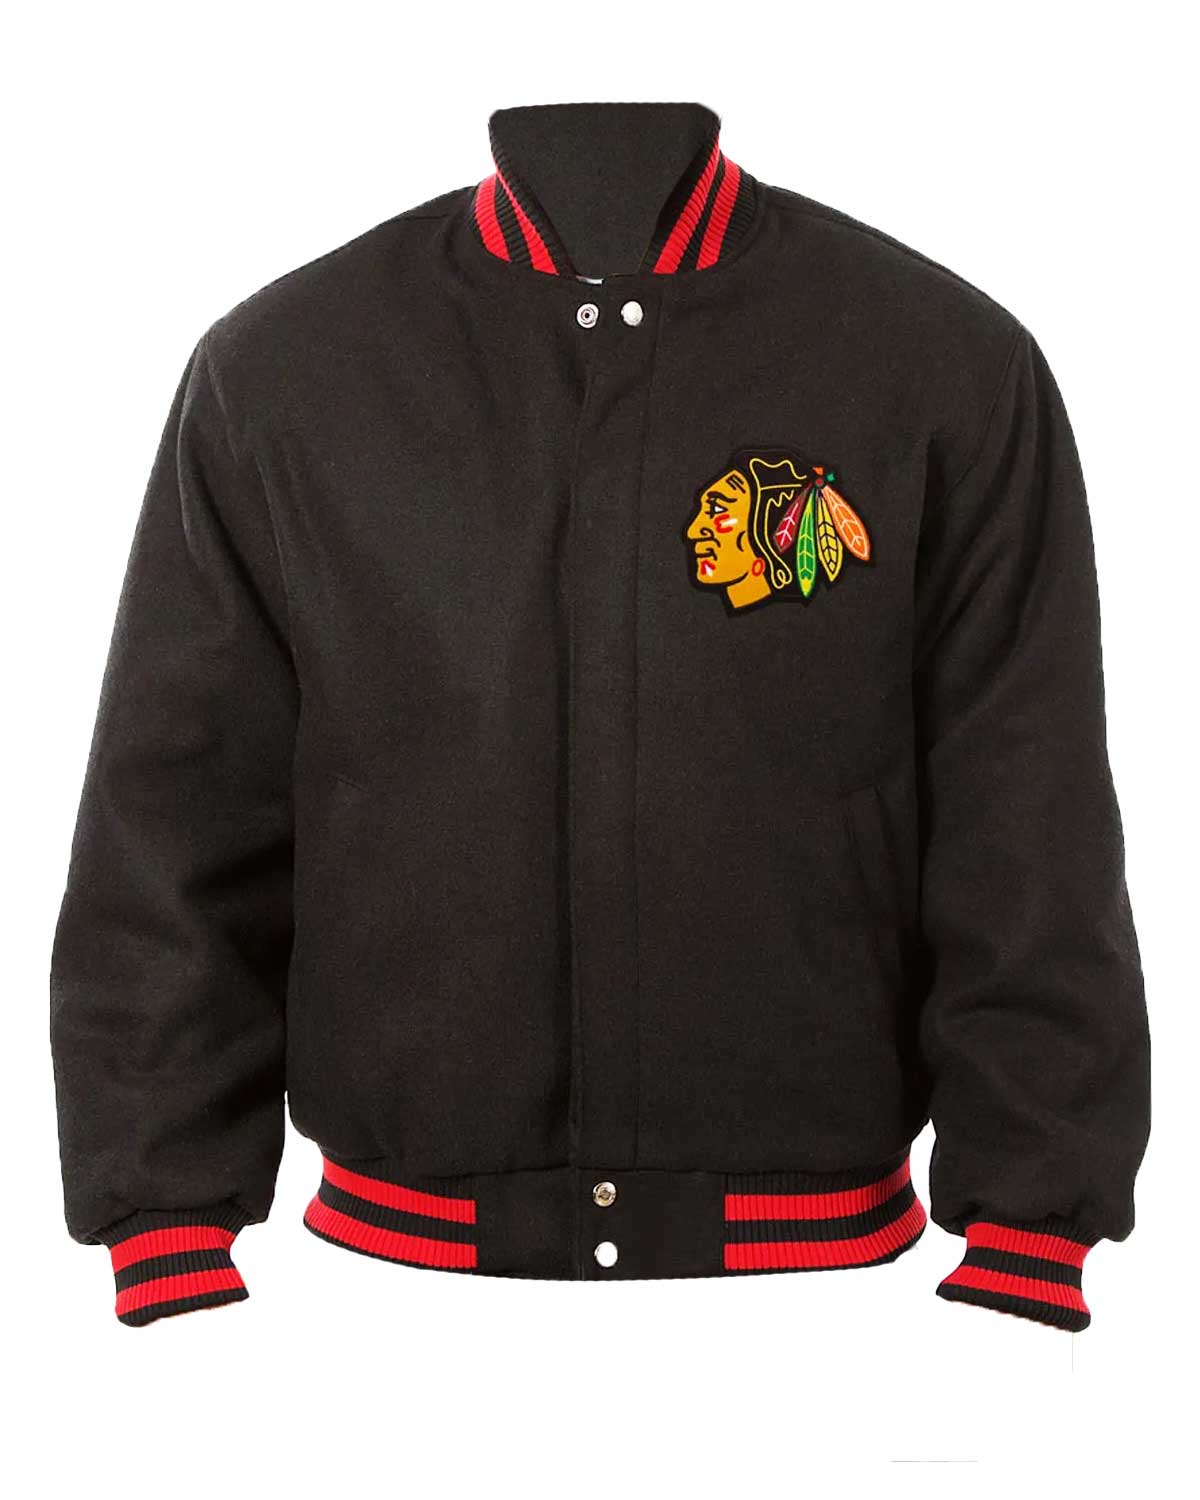 Chicago Blackhawks Black Wool Bomber Jacket | Elite Jacket